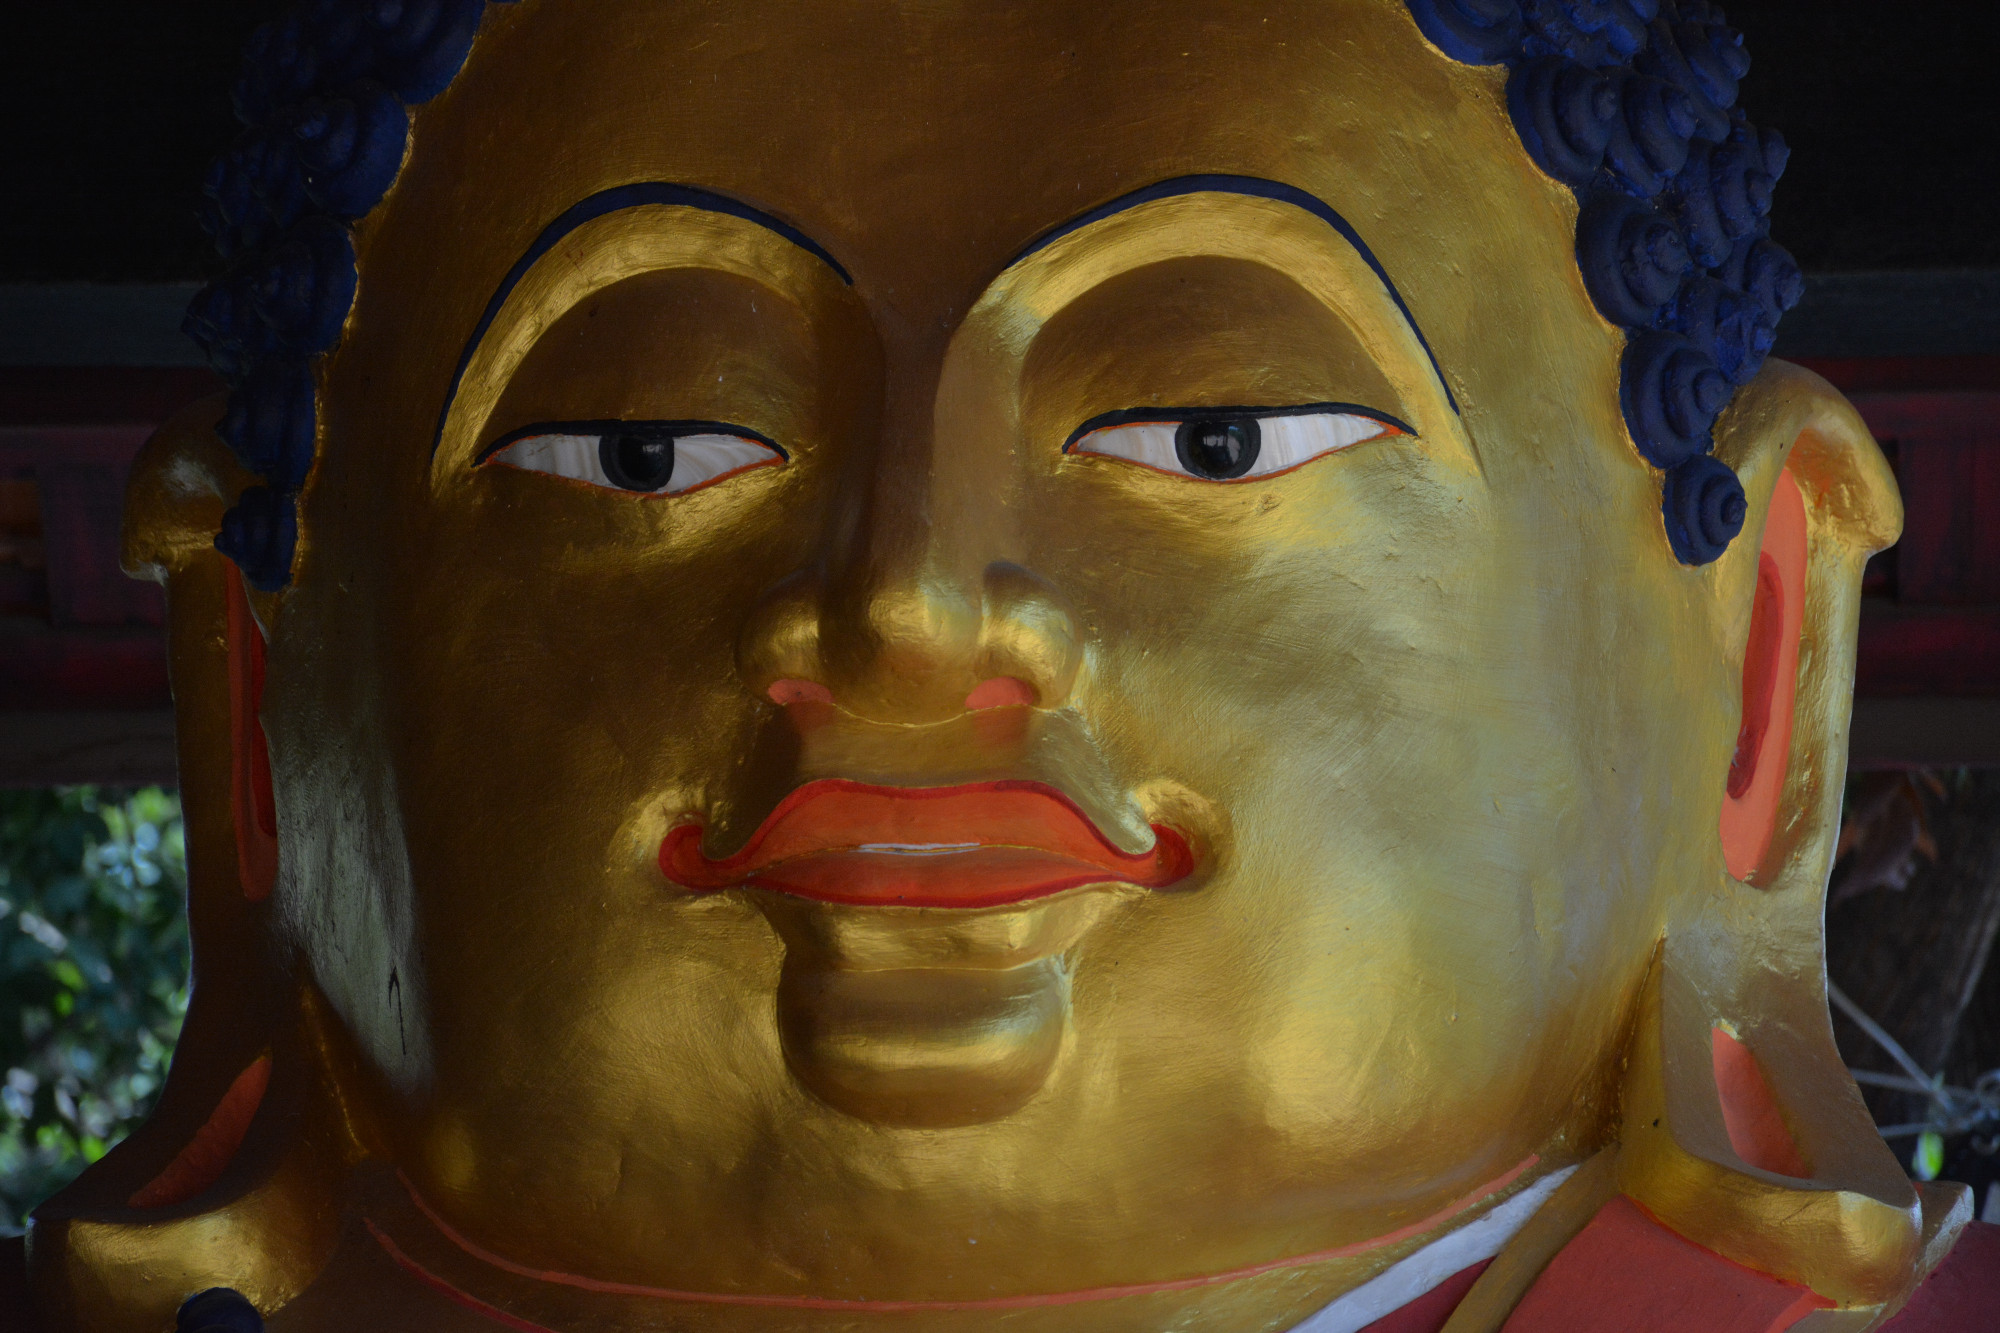 Close up of Buddha